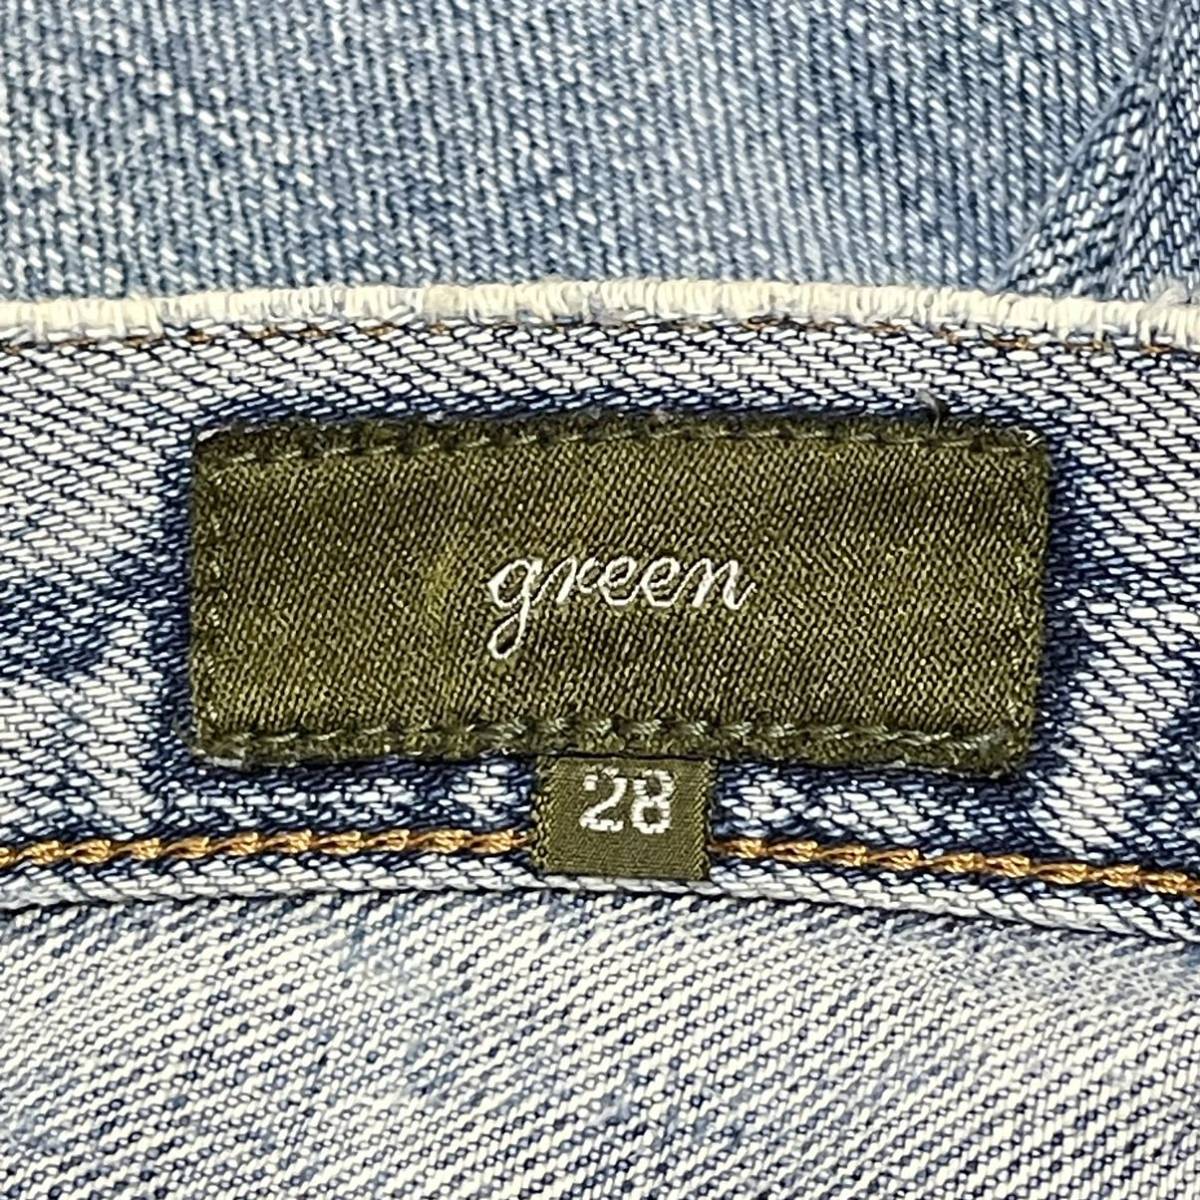  сделано в Японии [green] зеленый Denim брюки джинсы woshu обработка повреждение обработка American Casual порванный kaji оттенок голубого мужской размер 28/11543AA